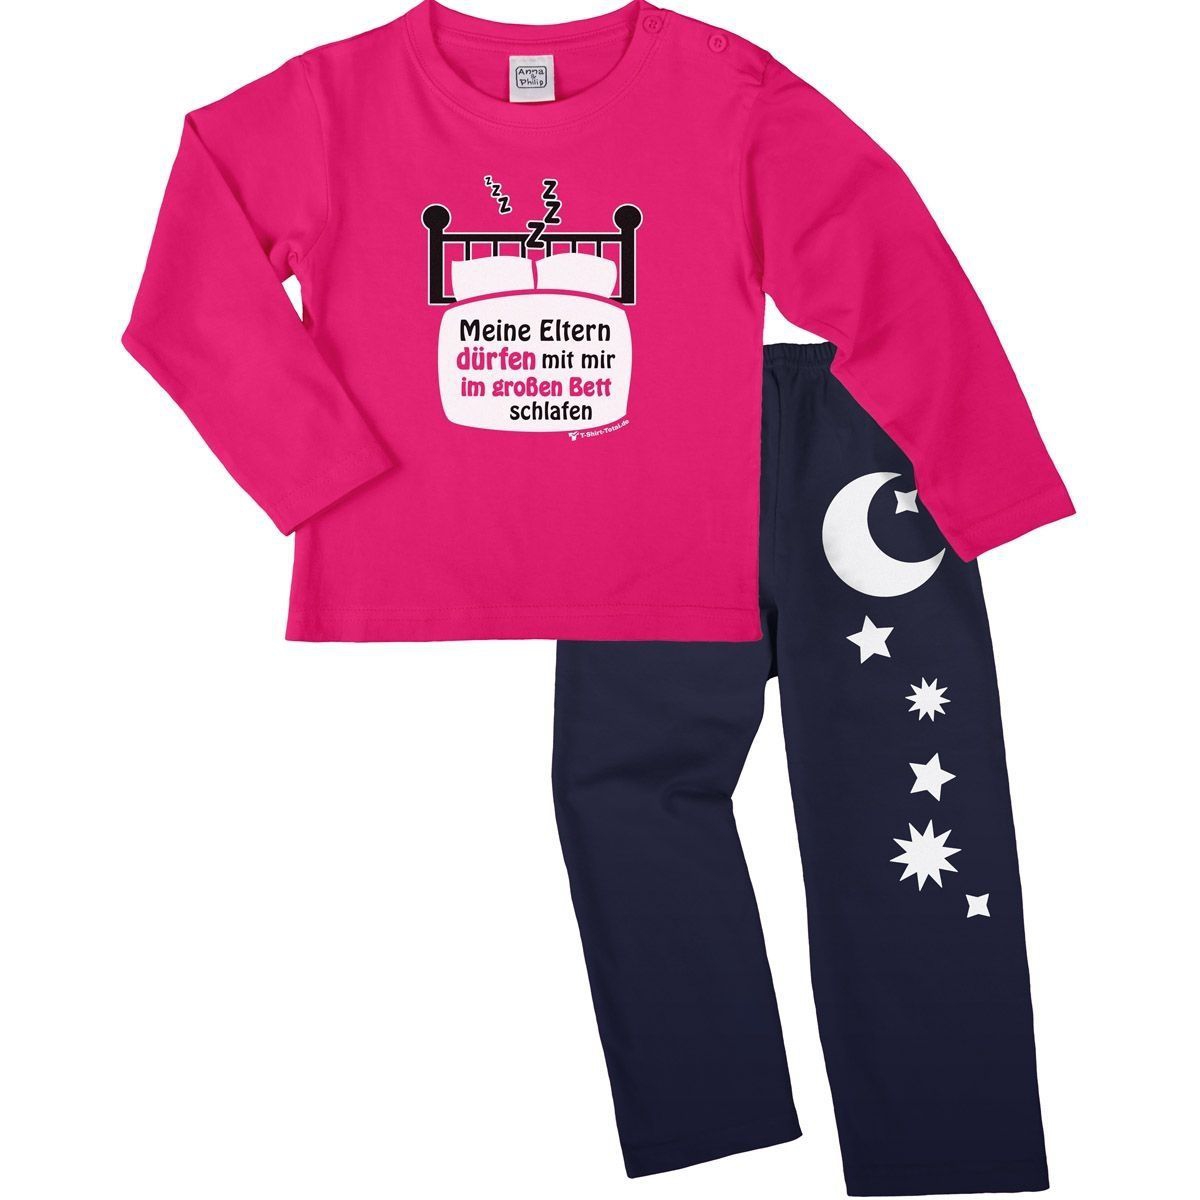 Im großen Bett schlafen Pyjama Set pink / navy 92